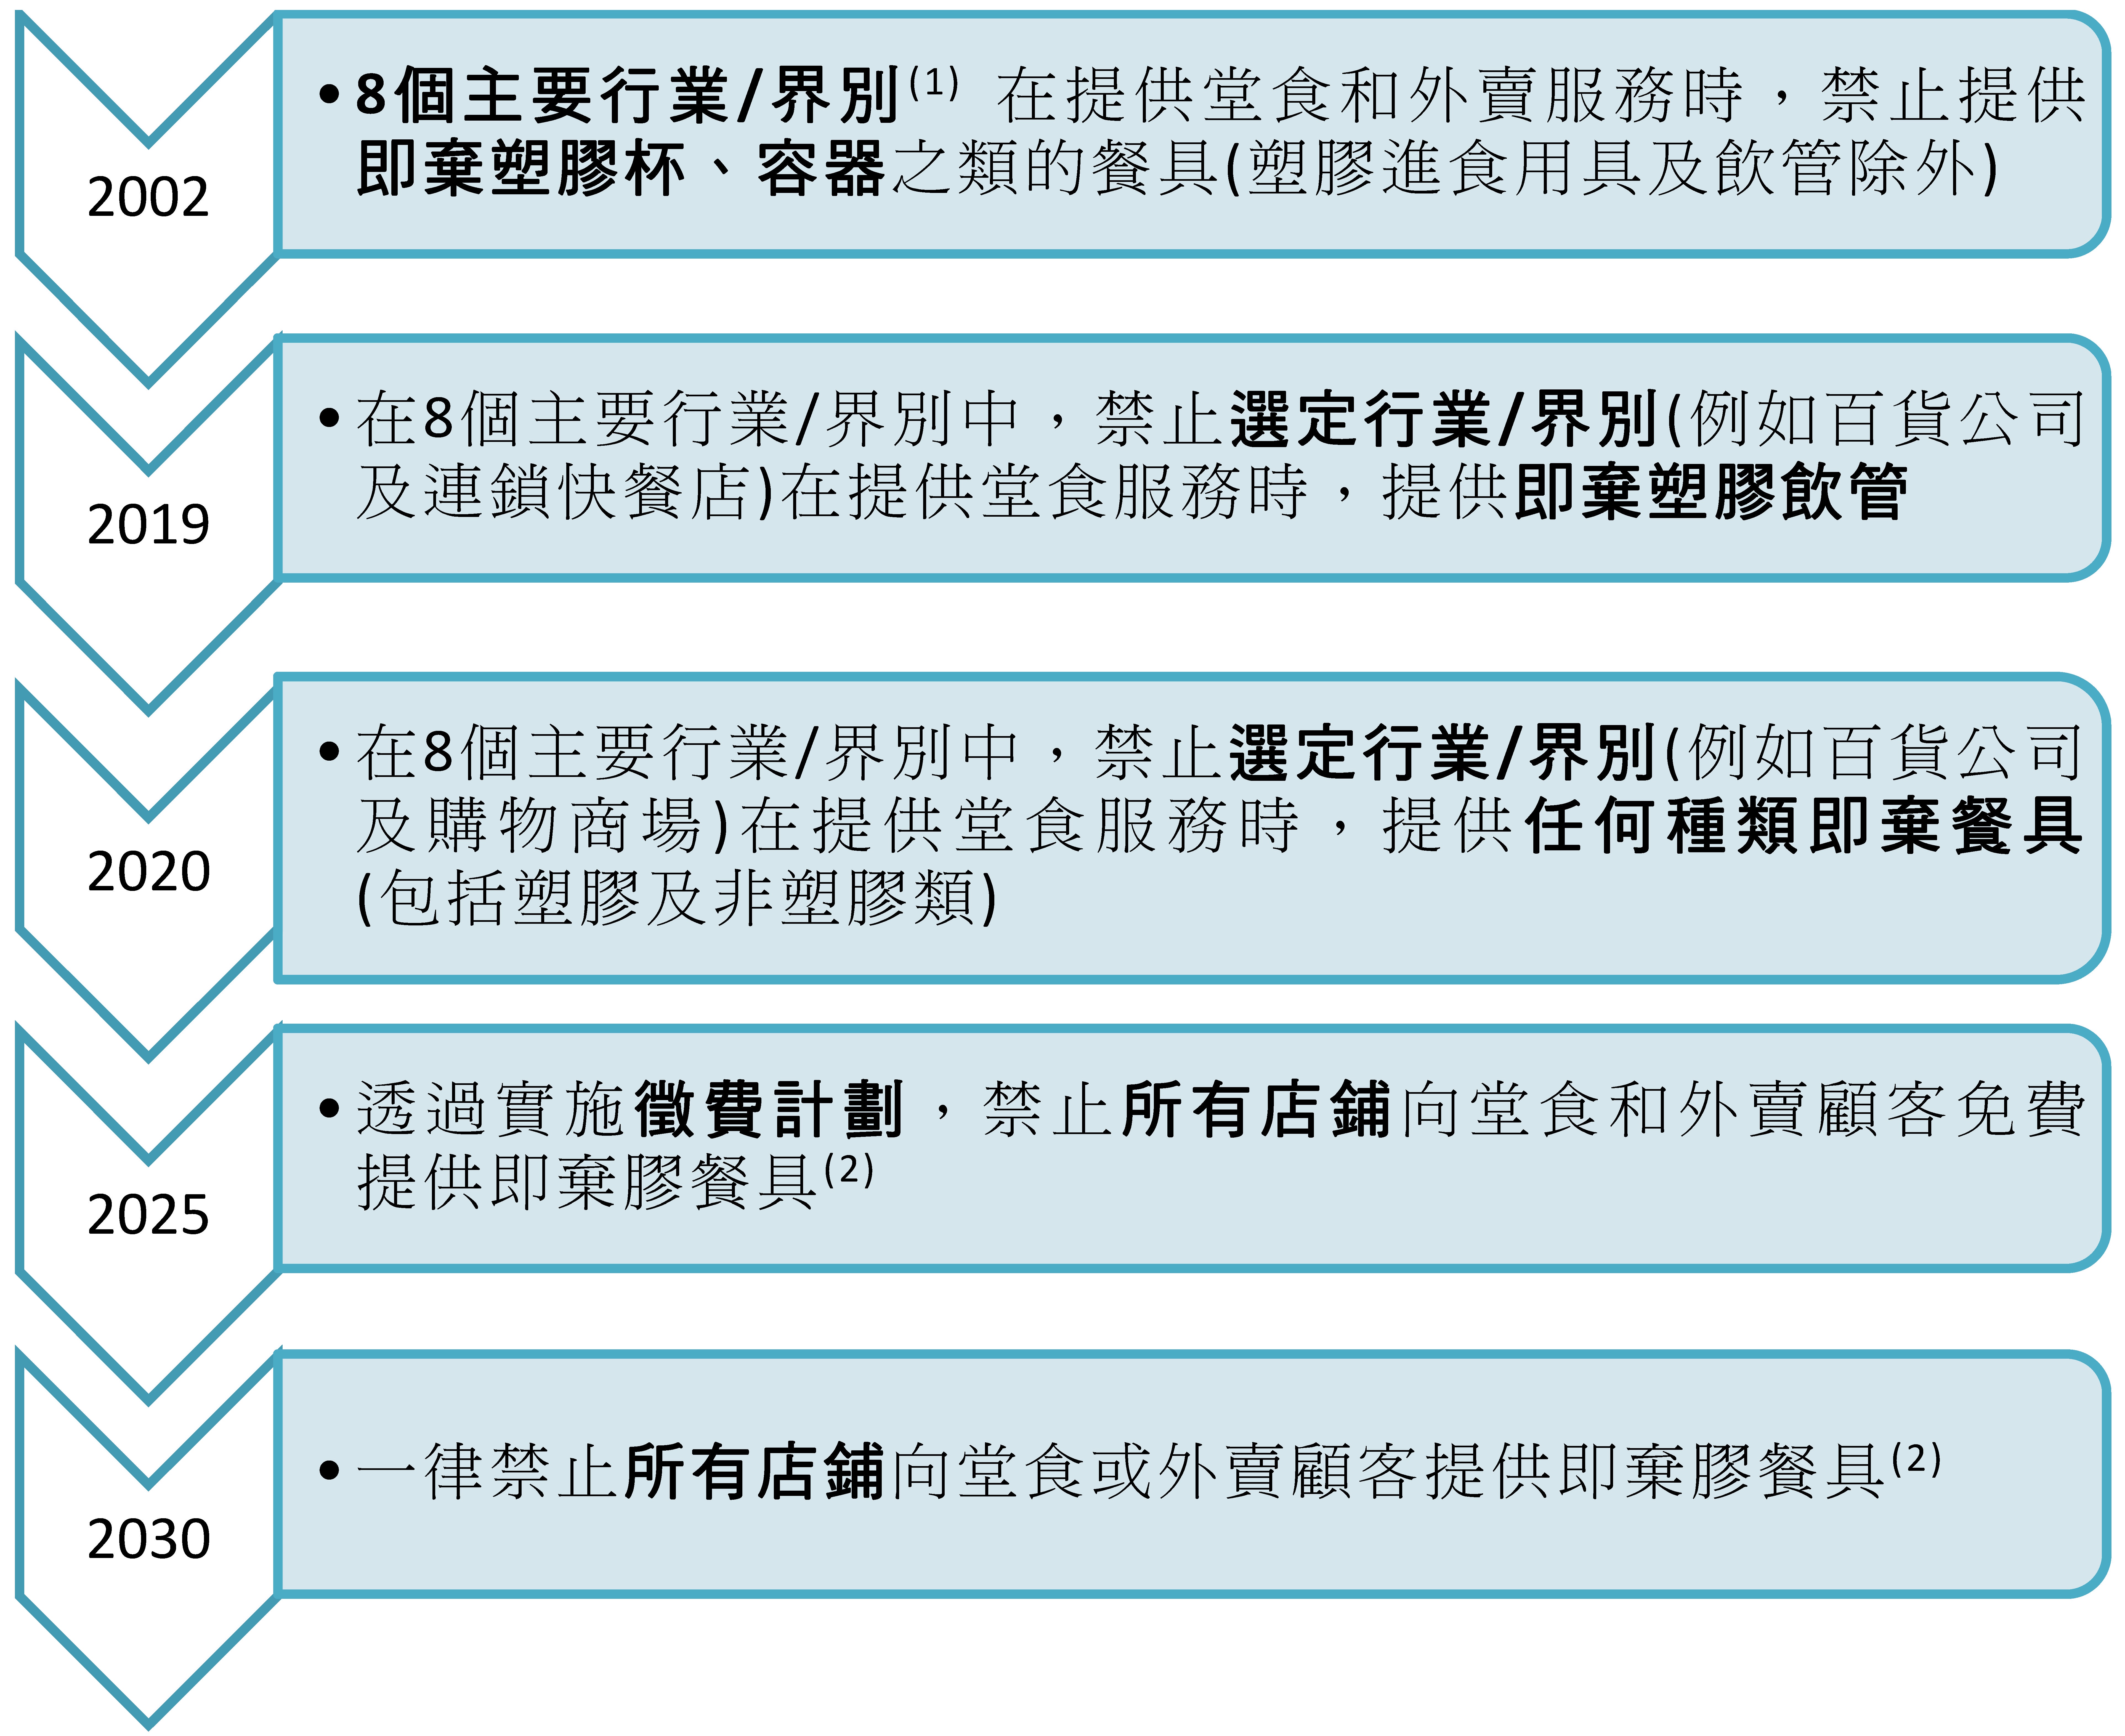 表2 - 台灣即棄膠餐具主要管制措施時間表